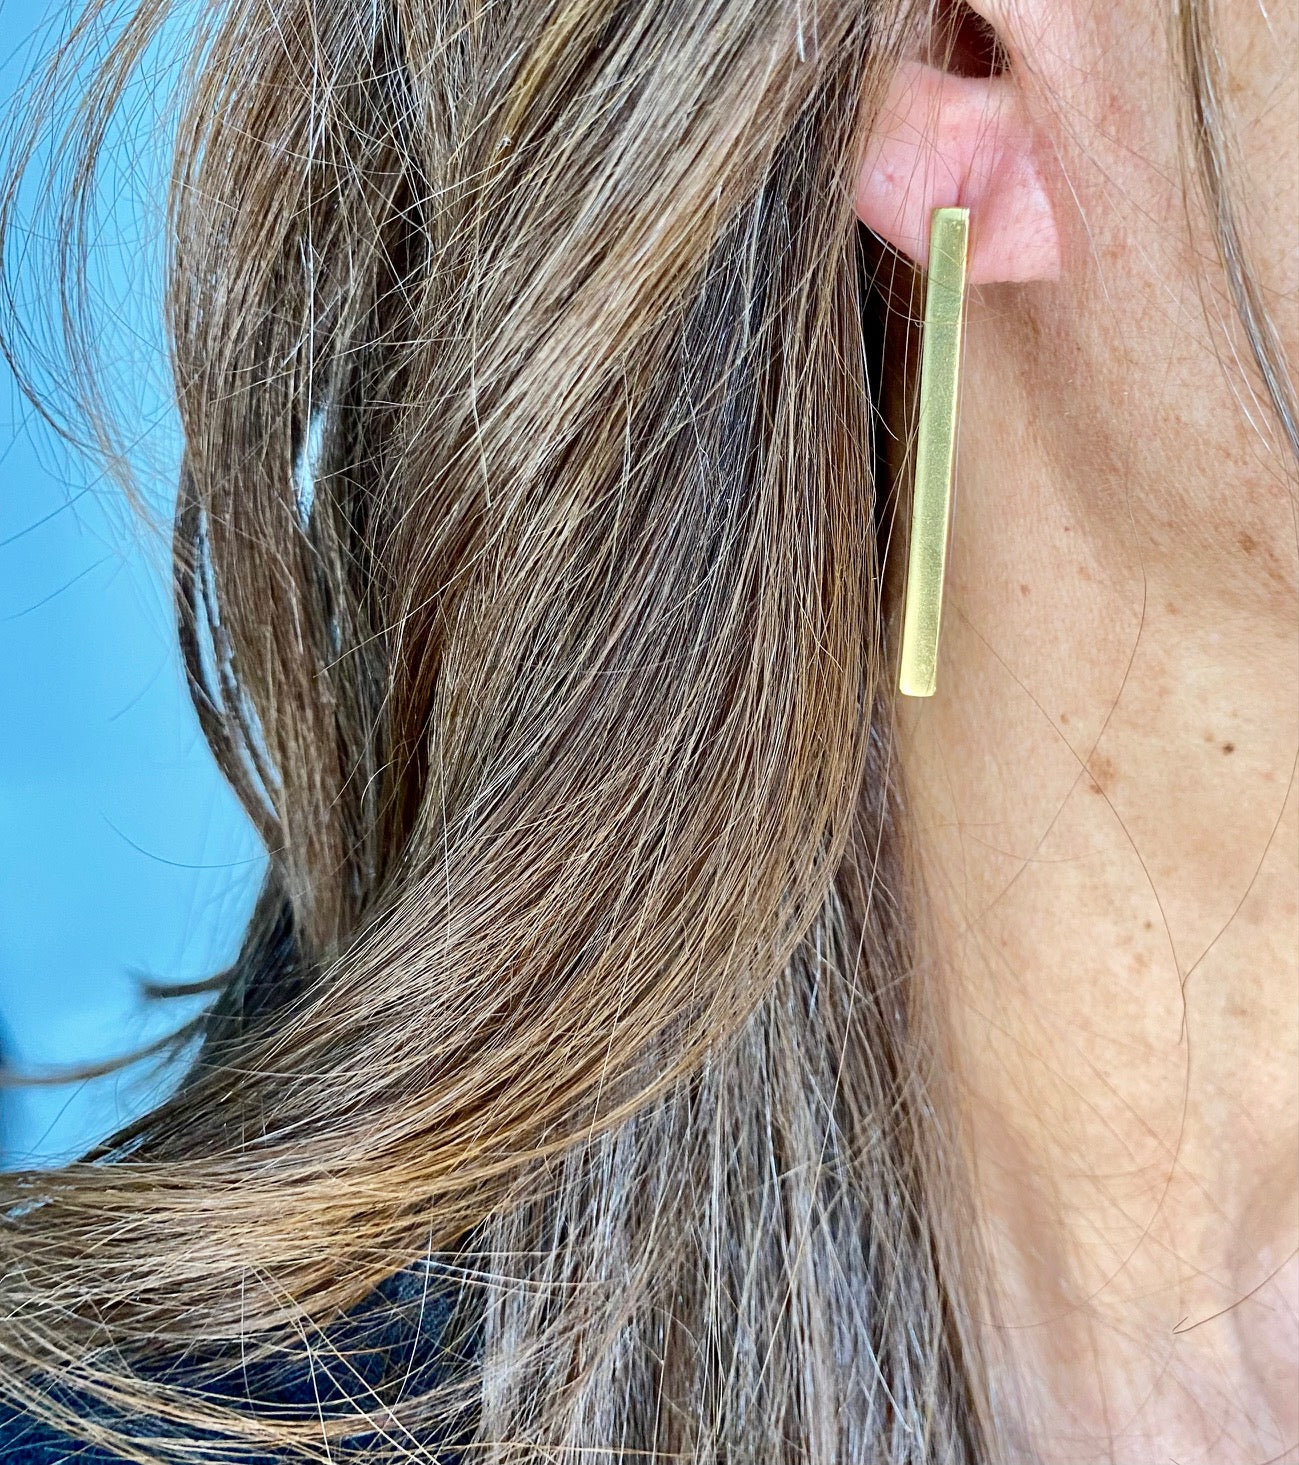 Flat bar drop earrings